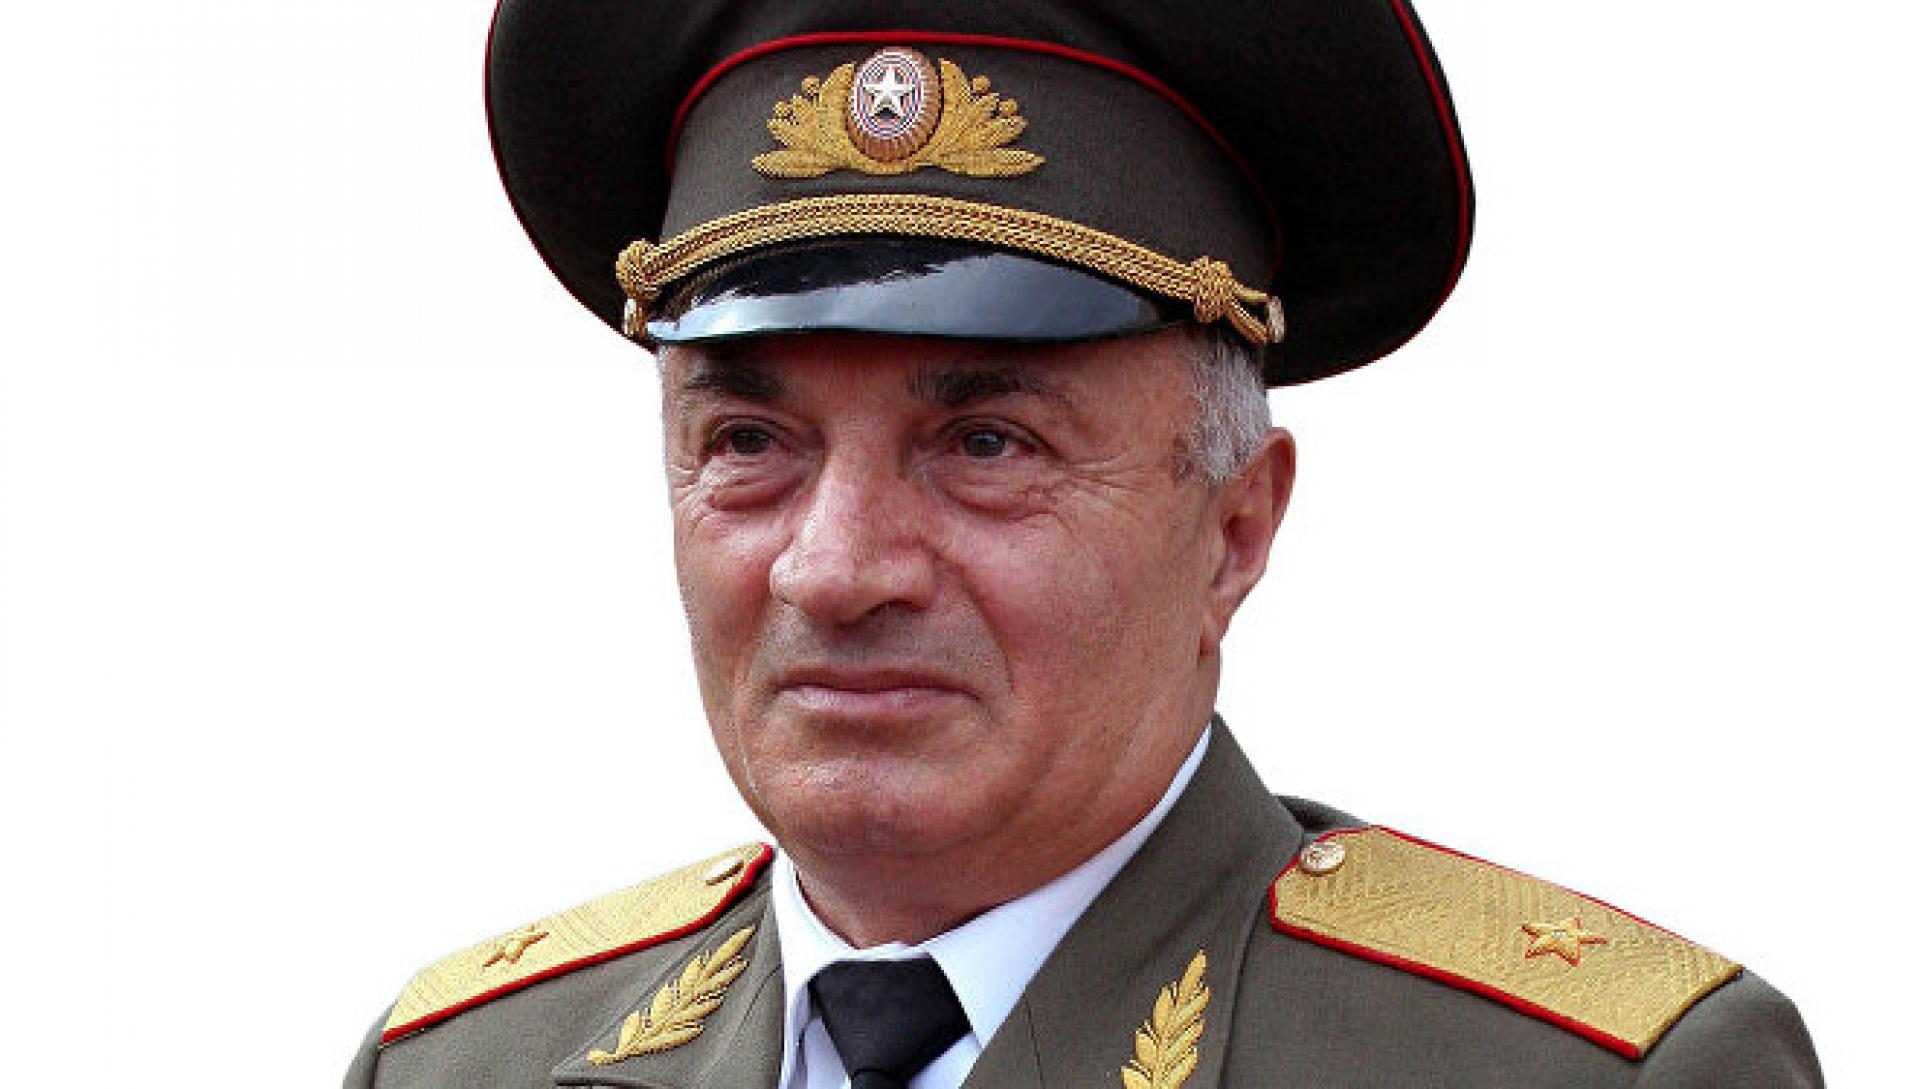 Аркадий Тер-Тадевосян – Командос, посмертно удостоен звания Национального героя